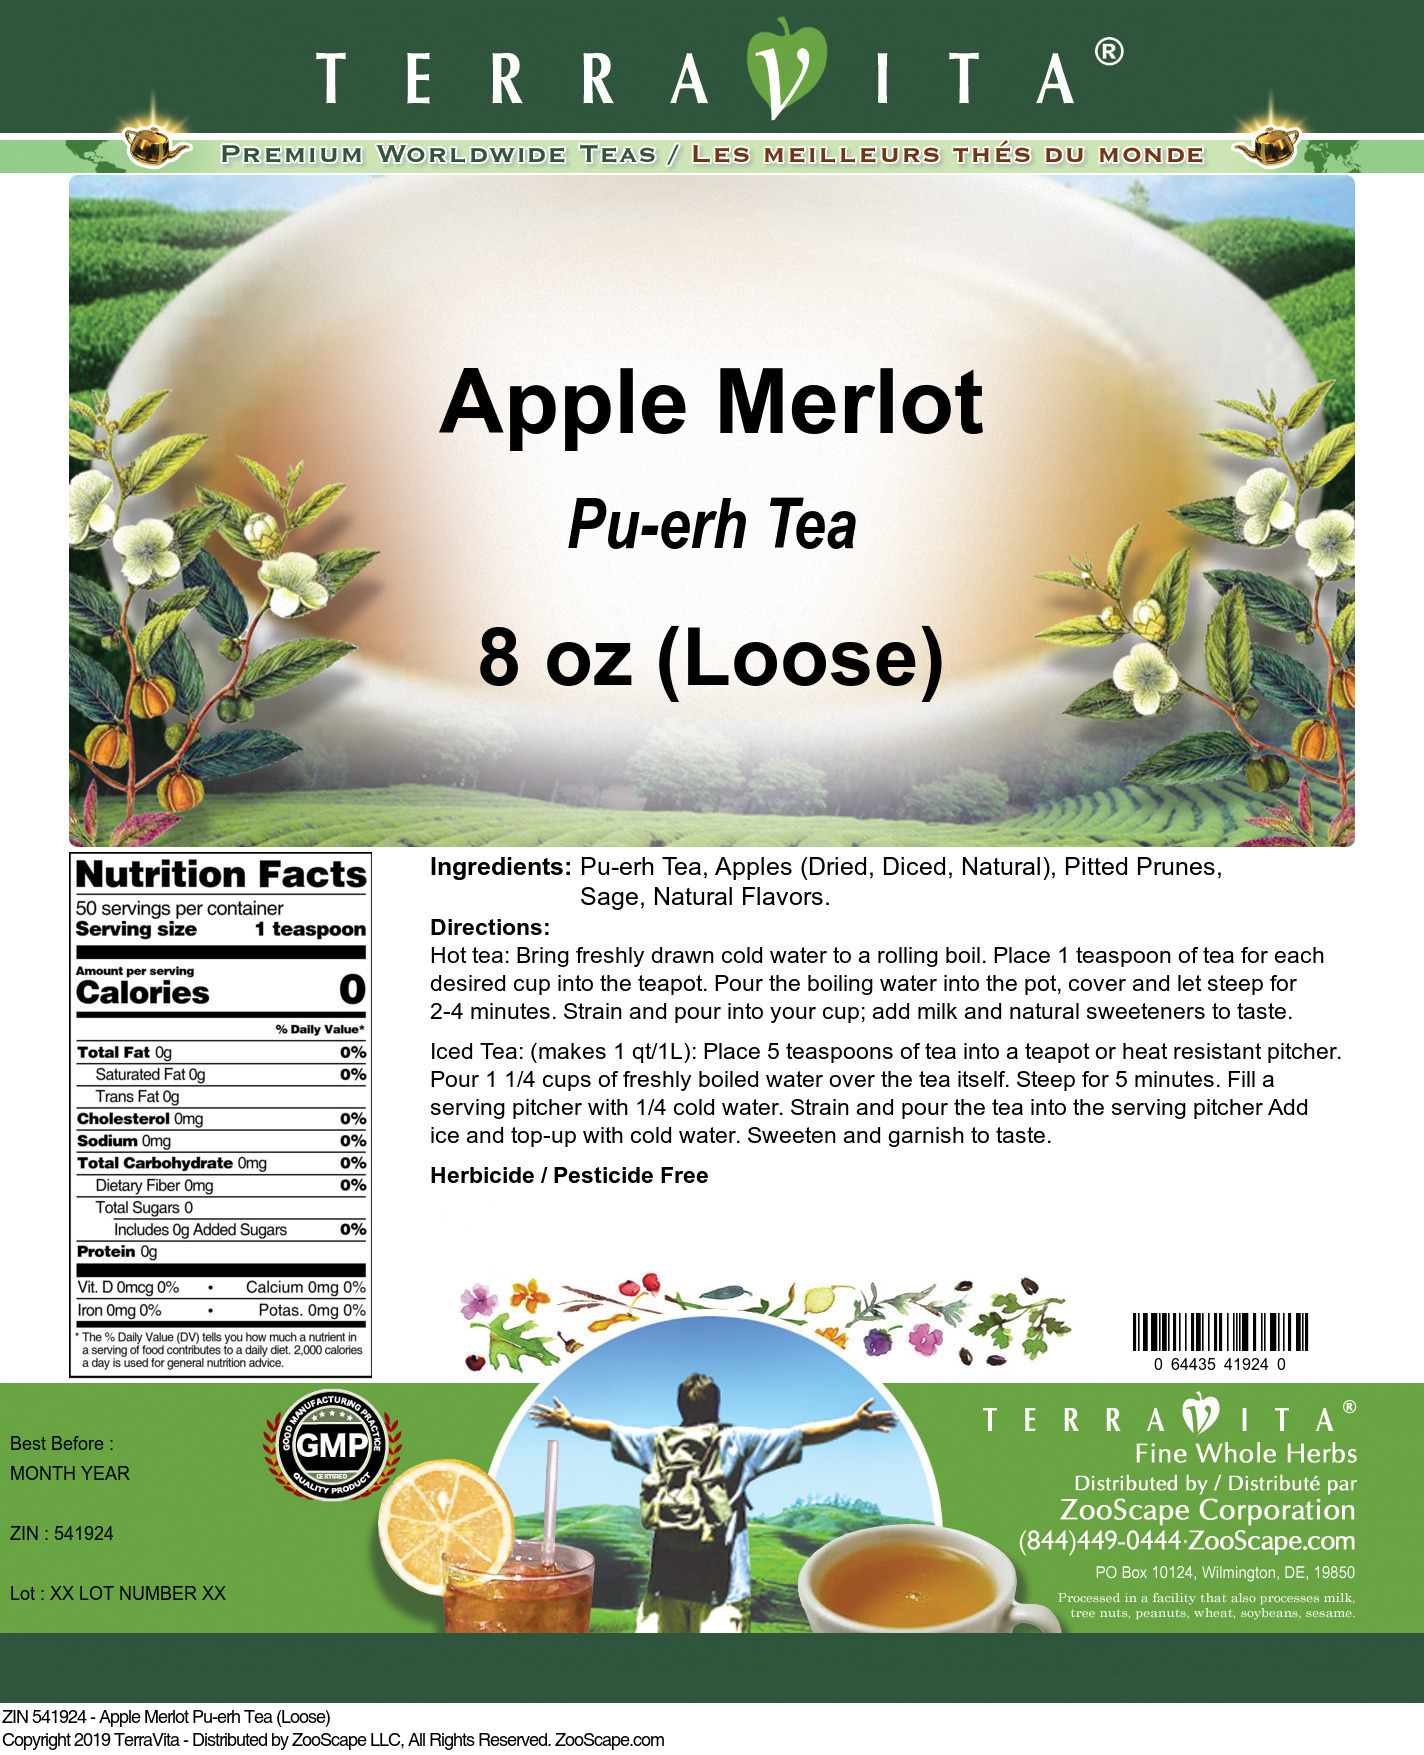 Apple Merlot Pu-erh Tea (Loose) - Label